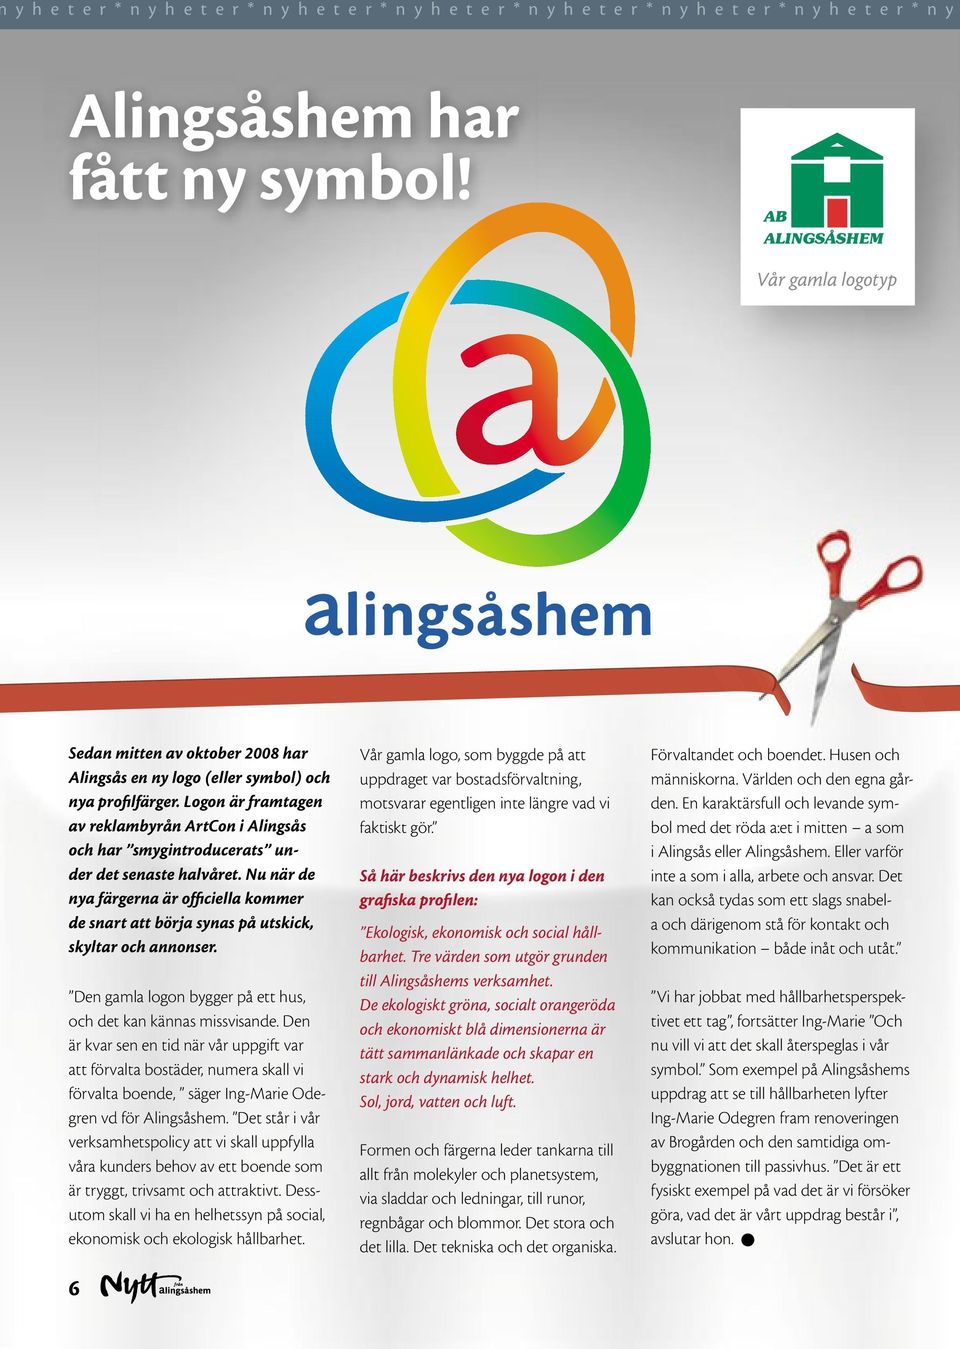 Logon är framtagen av reklambyrån ArtCon i Alingsås och har smygintroducerats under det senaste halvåret.